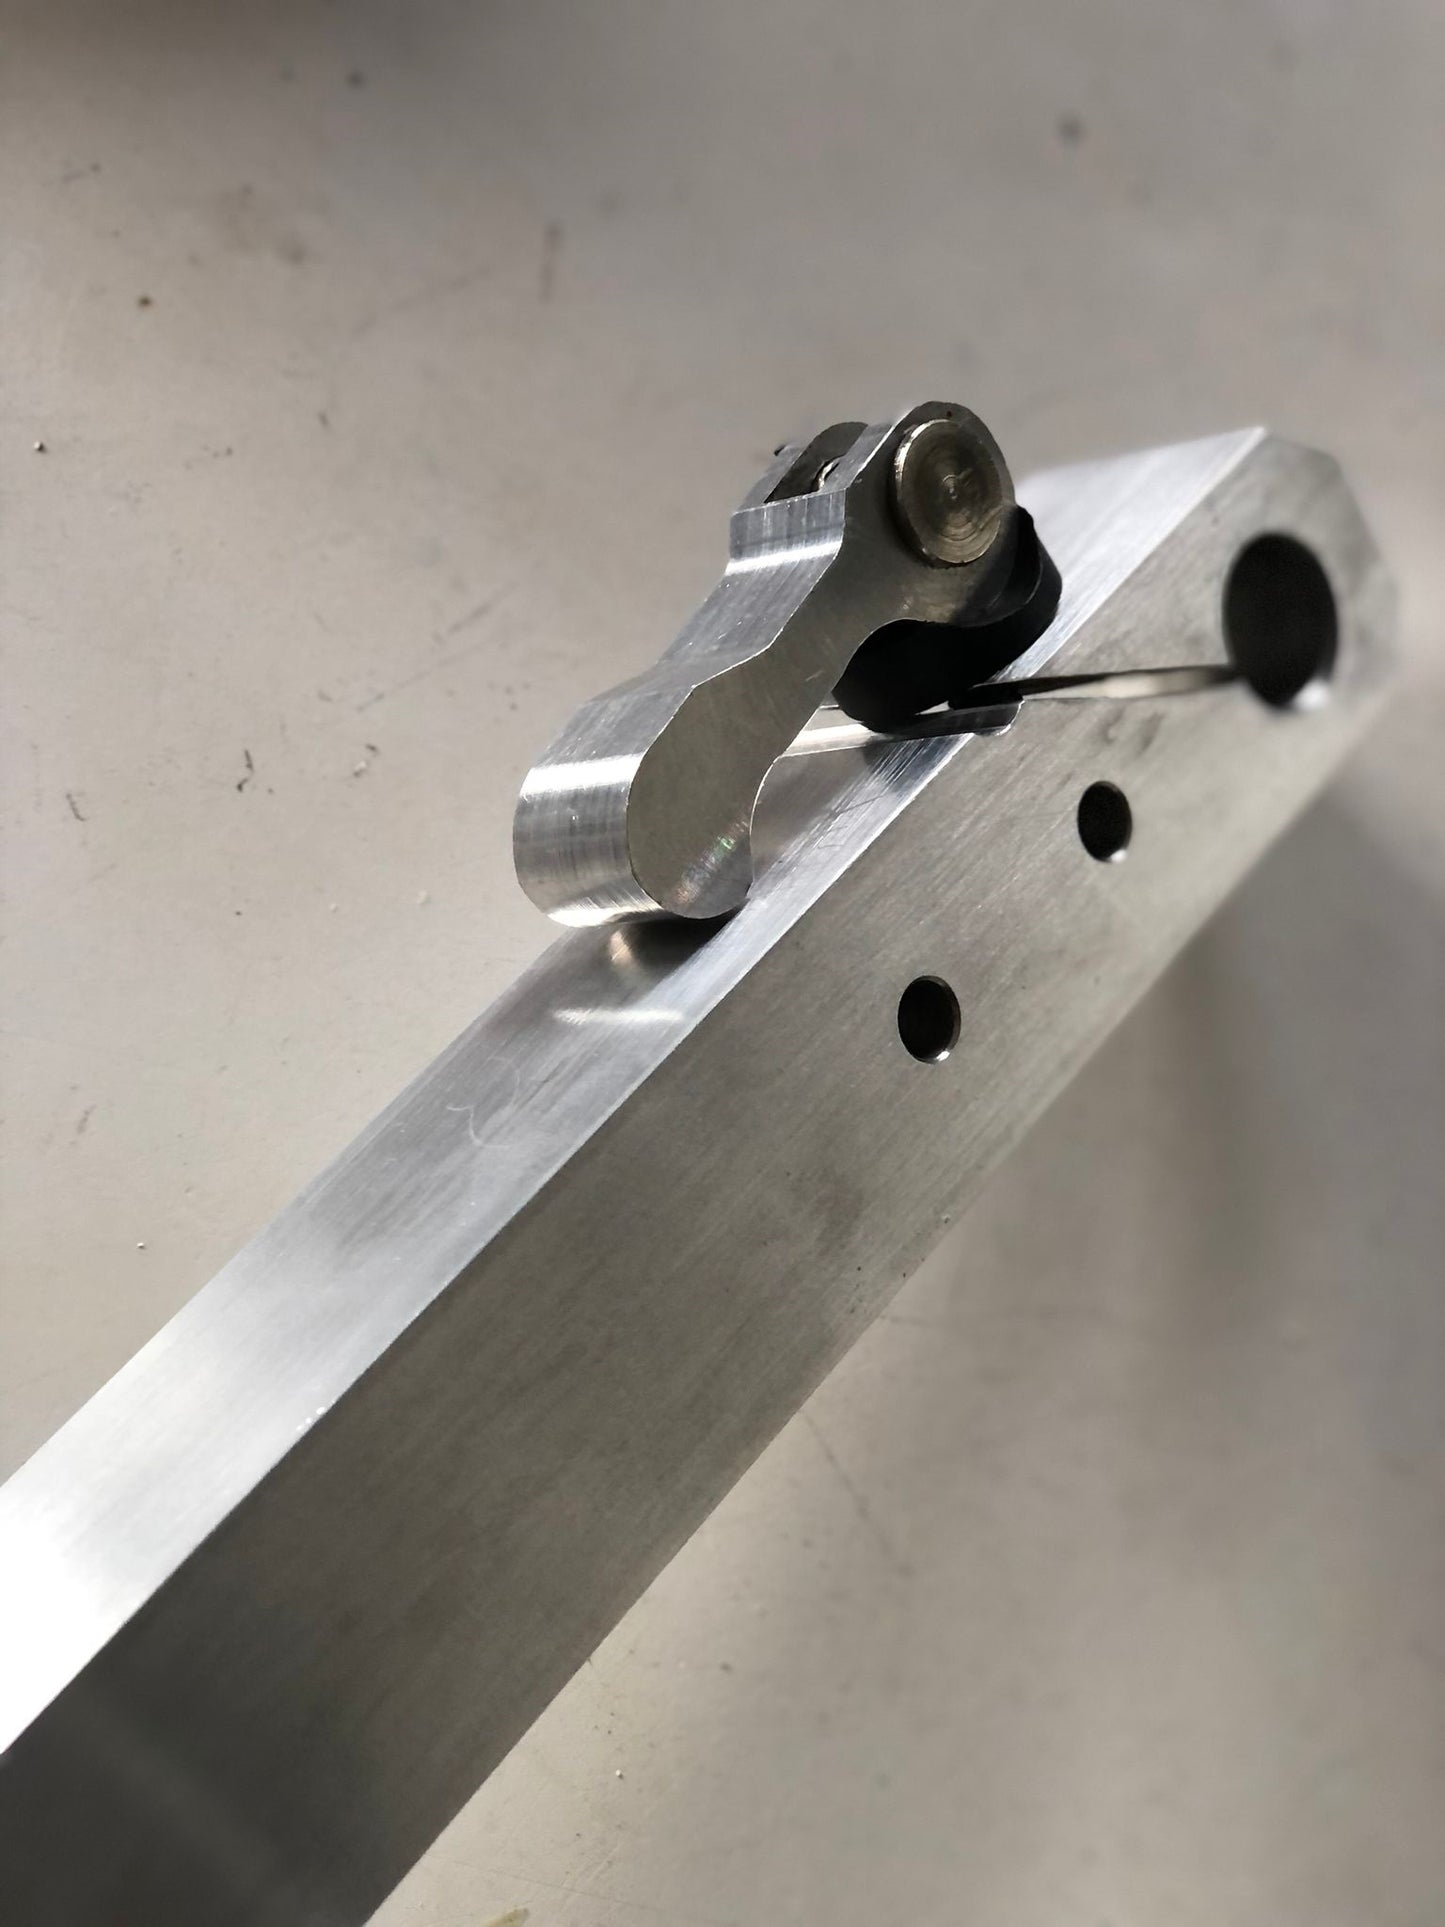 TR Maker Belt Grinder Tooling Arm for 2x72"  making grinder